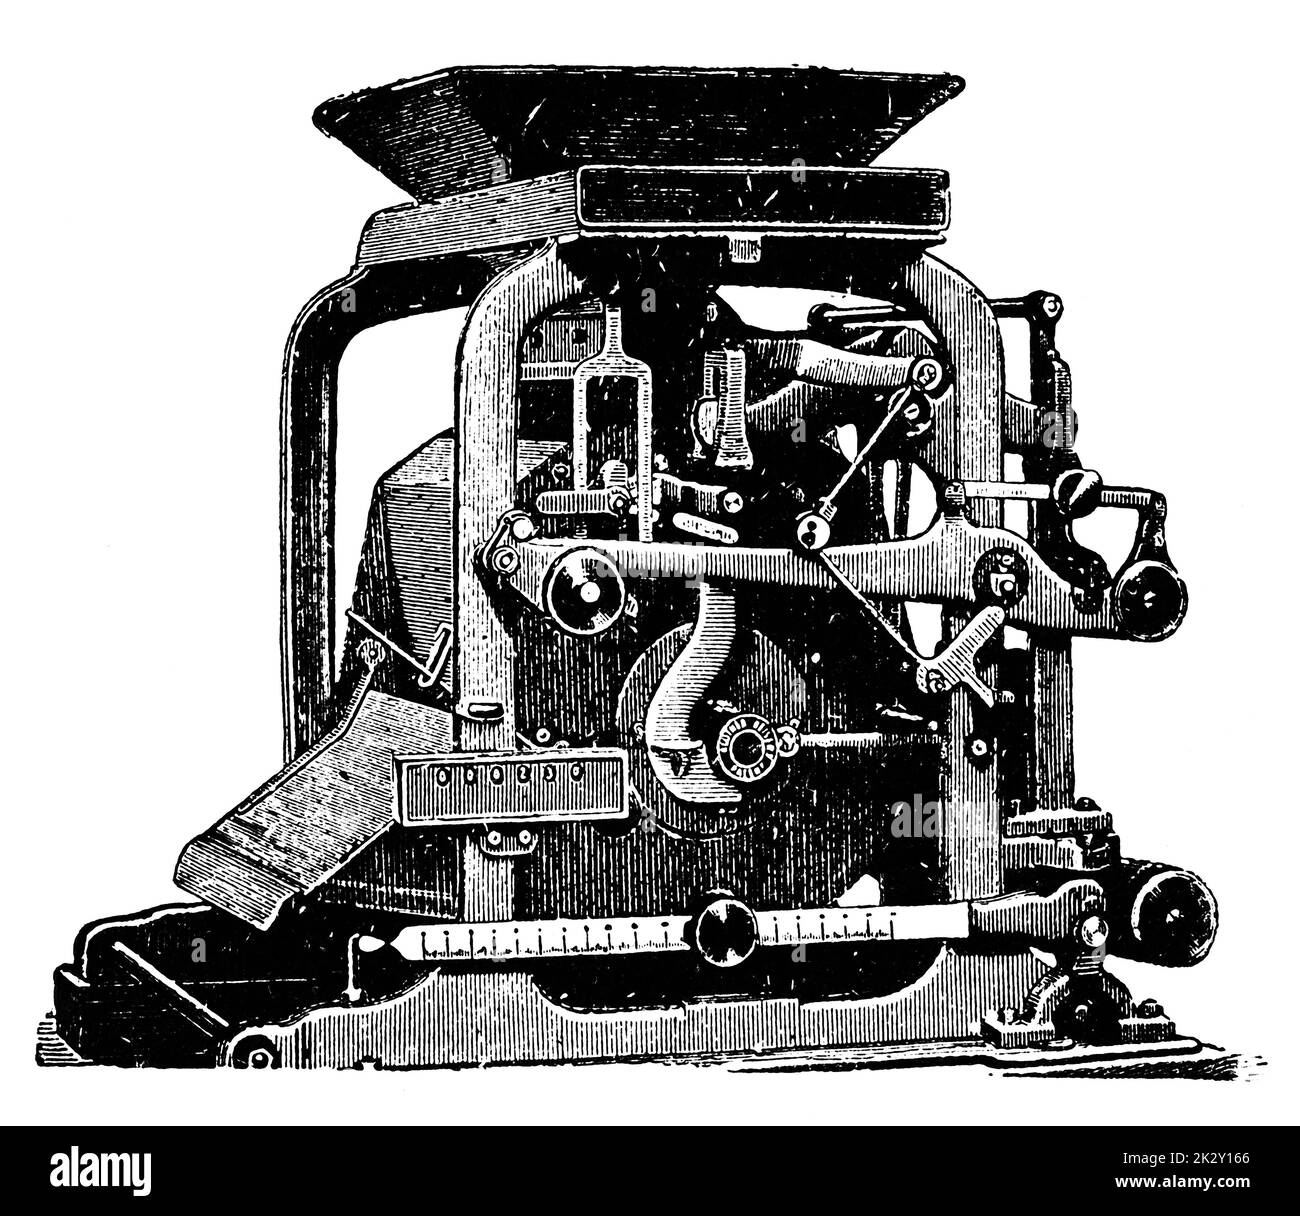 Machine de nettoyage de grains industriels avec dispositif de mesure des paramètres du produit fini. Illustration du 19e siècle. Allemagne. Arrière-plan blanc. Banque D'Images